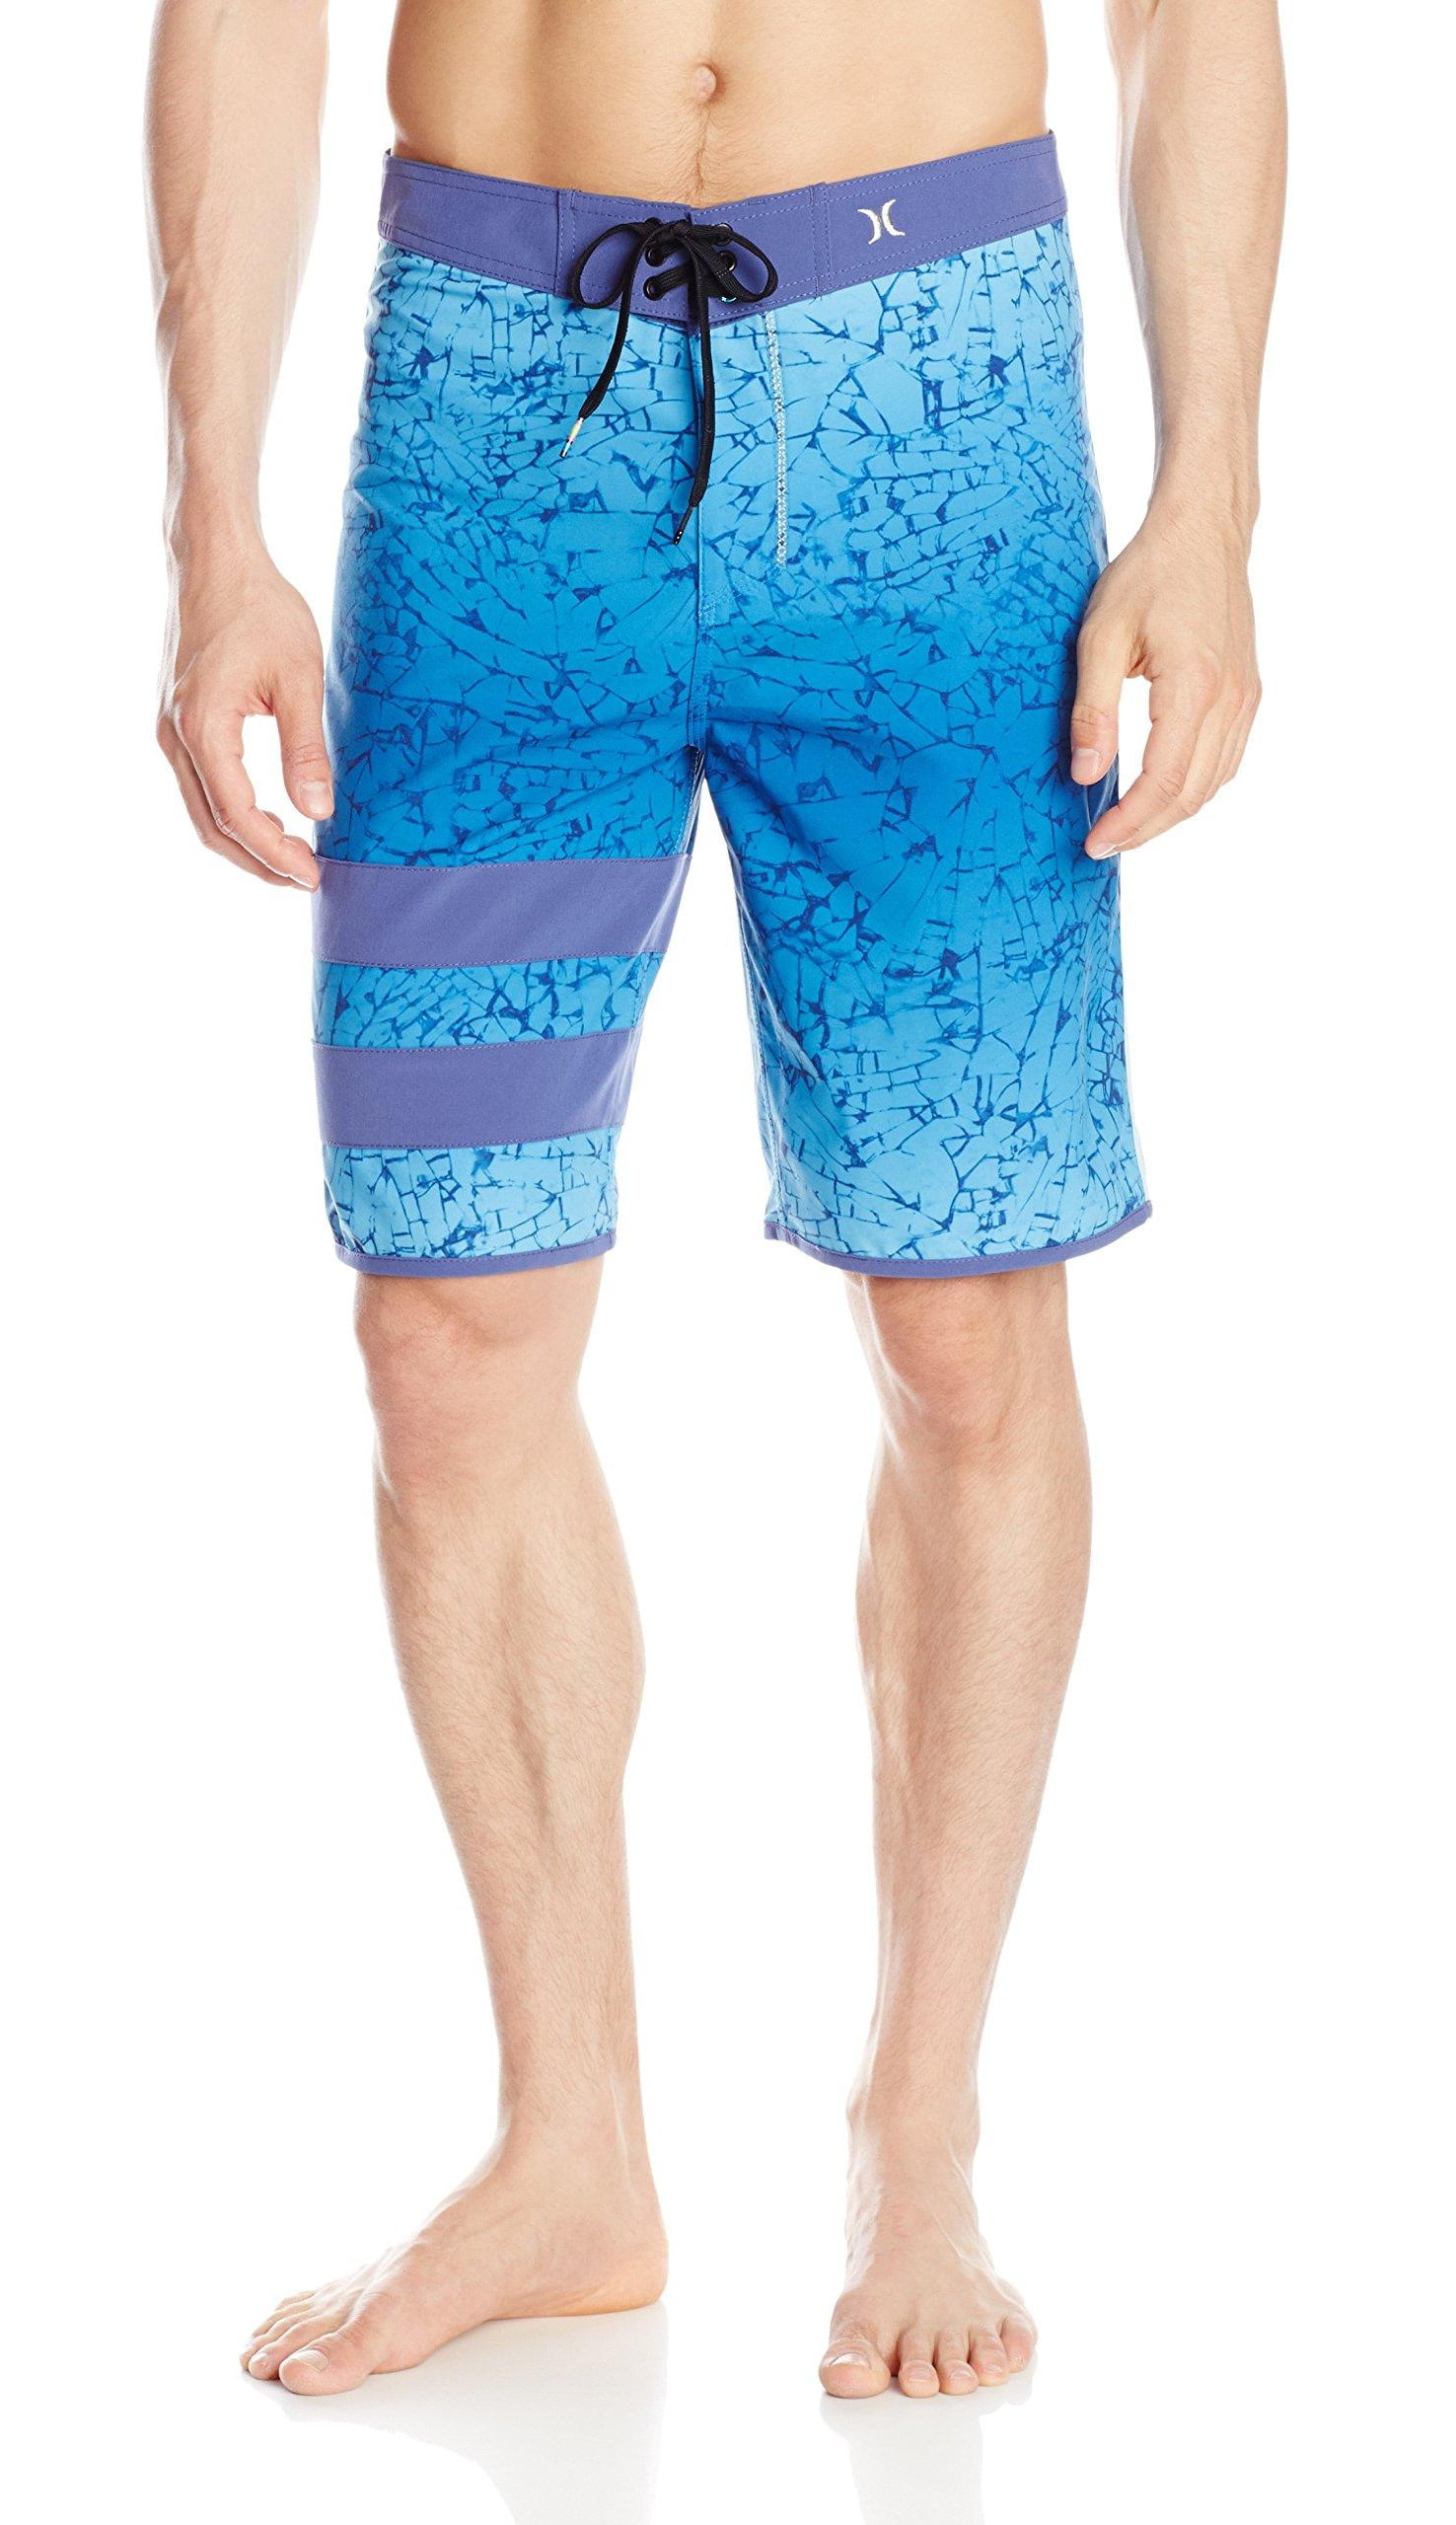 Horizon-t Beach Shorts Dark Summer Cartoon Mens Fashion Quick Dry Beach Shorts Cool Casual Beach Shorts